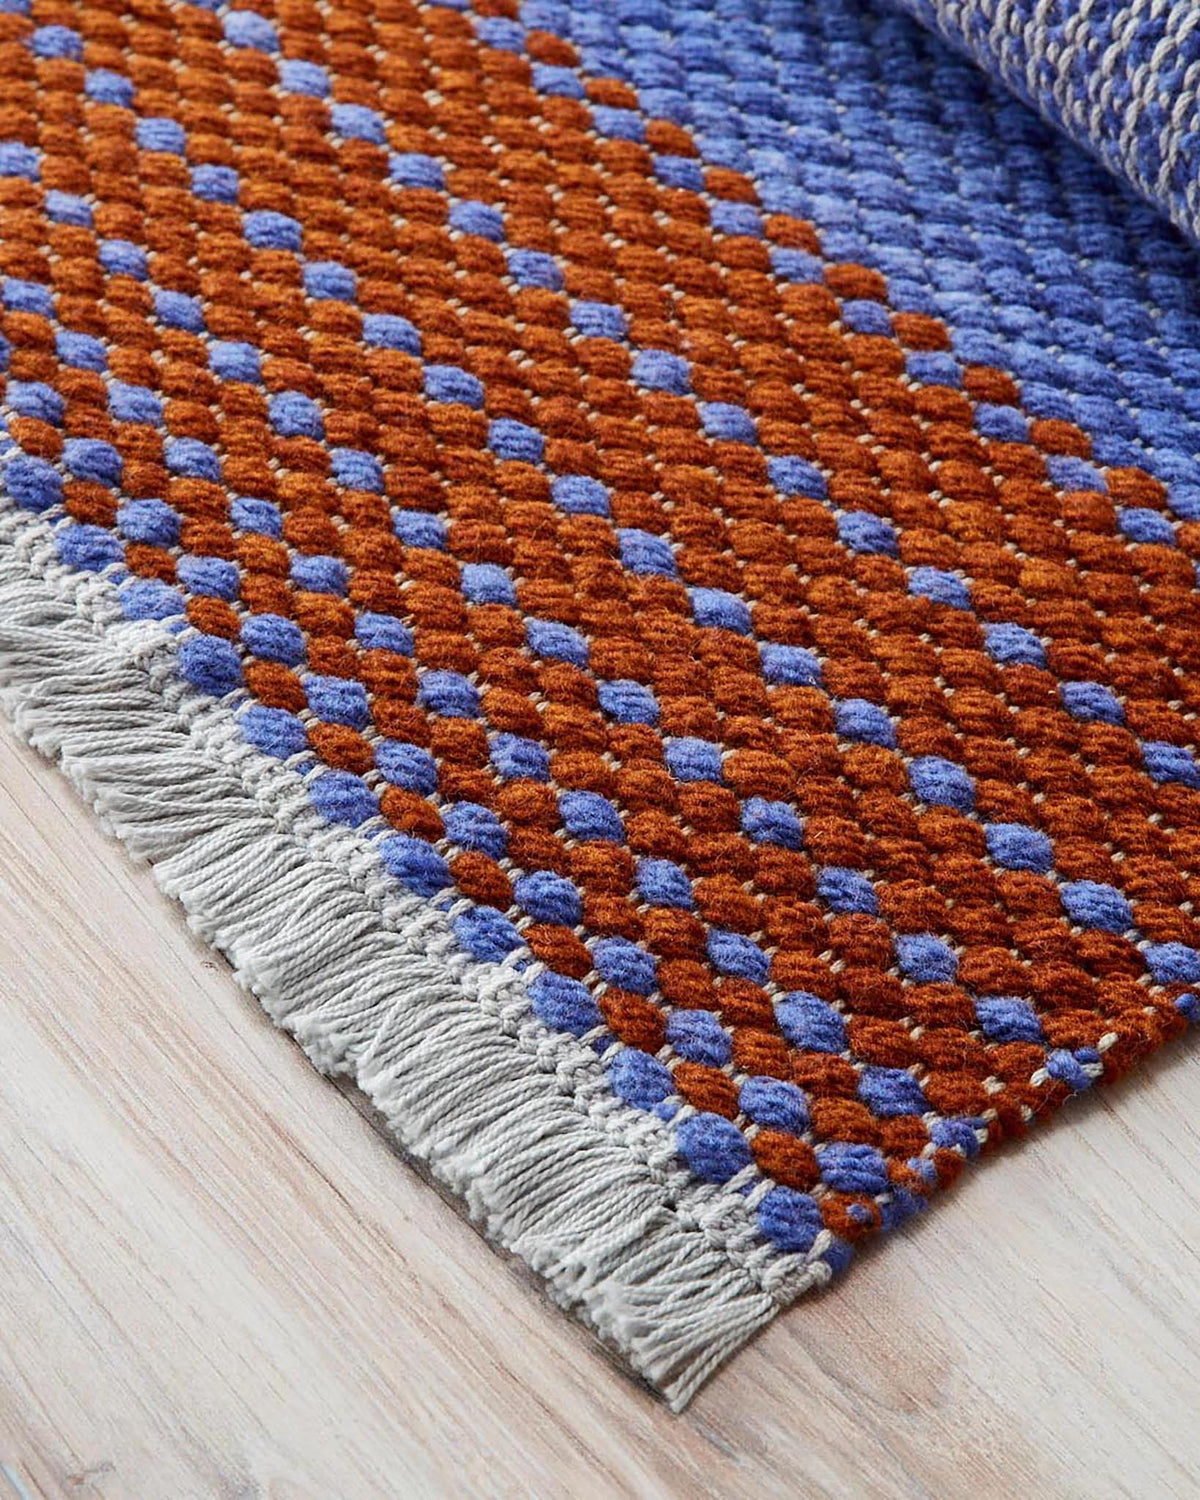 Basketweave Rug Weaving Pattern - Gist Yarn